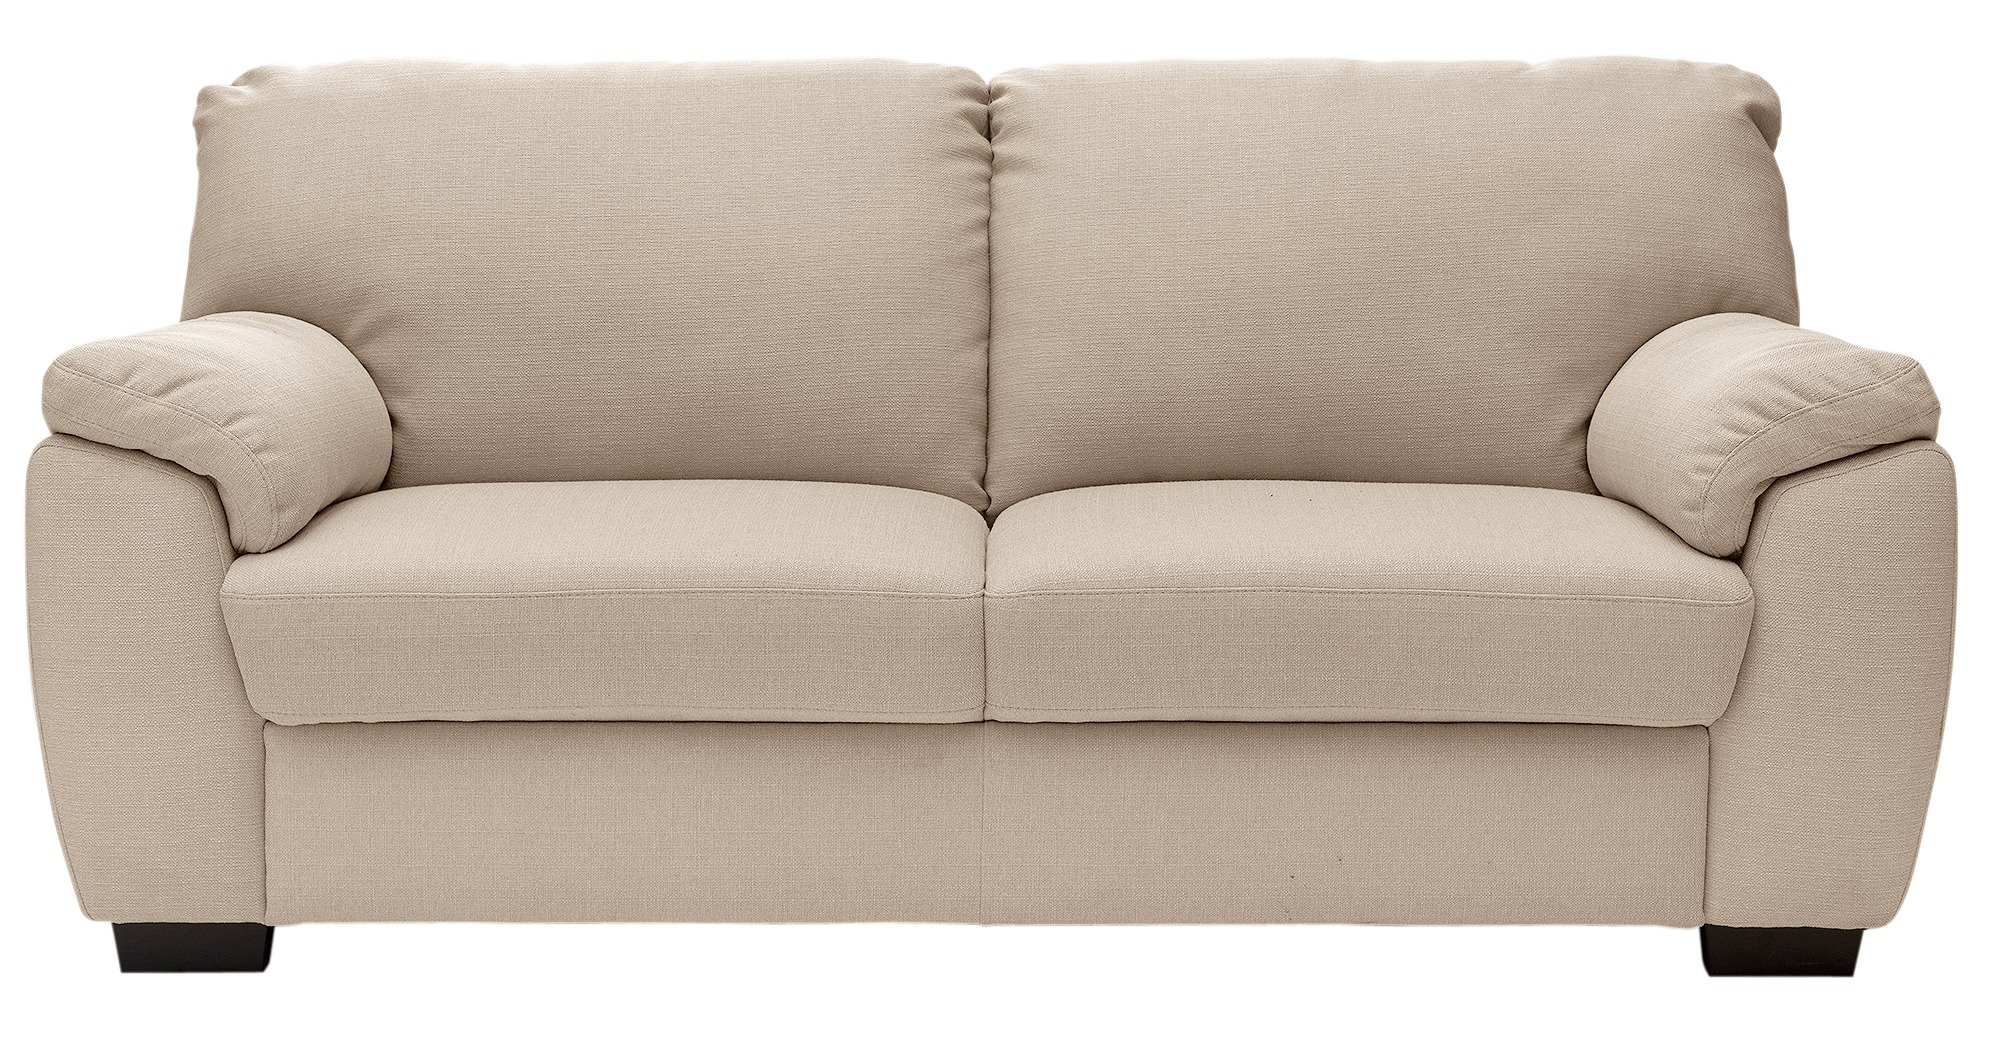 Argos Home Milano 3 Seater Fabric Sofa - Beige